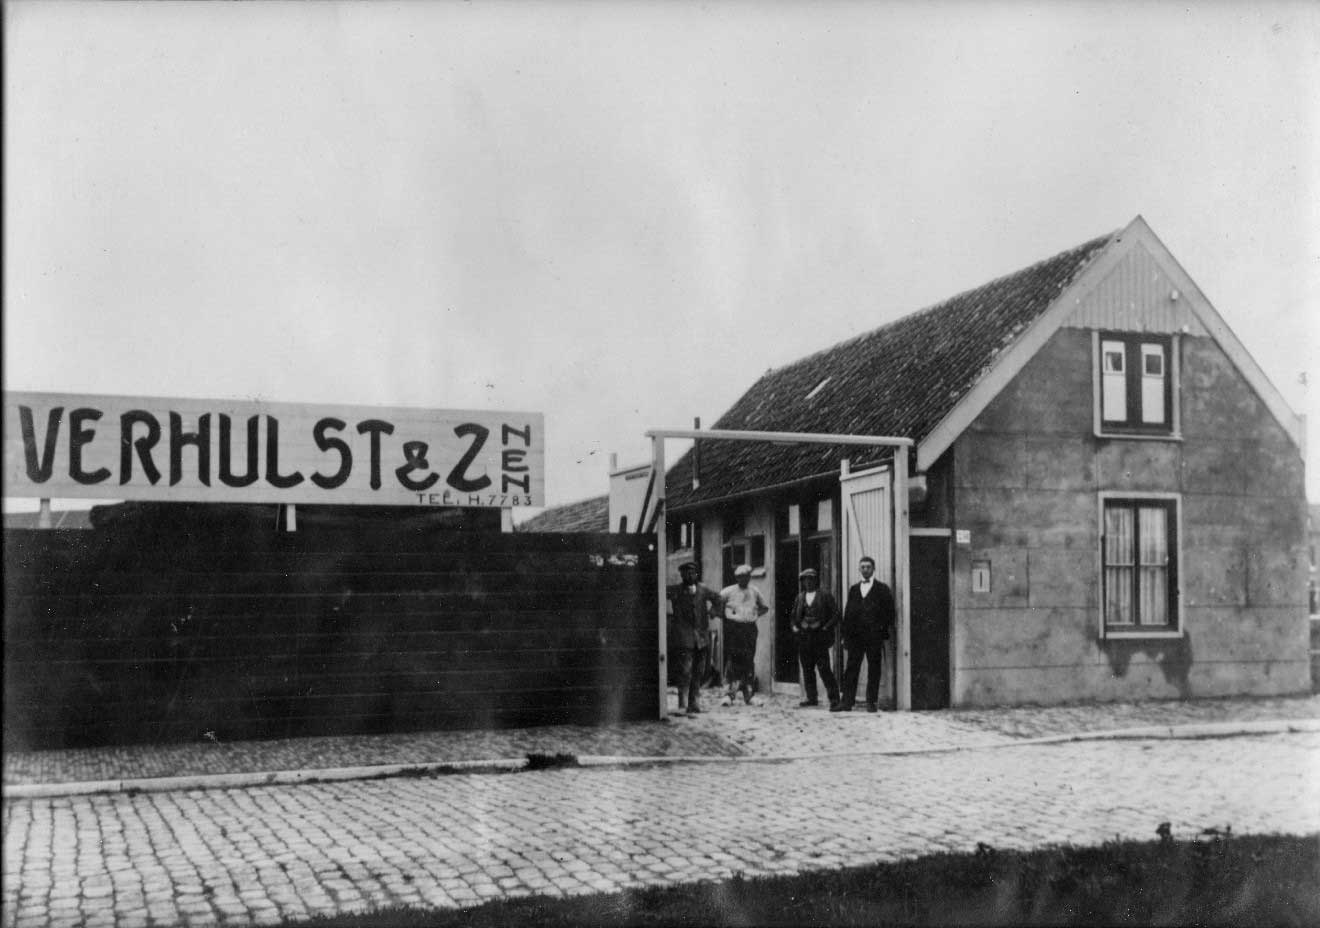 Verhulst, bouwmaterialenhandel, Waldorpstraat 250, jaren 20